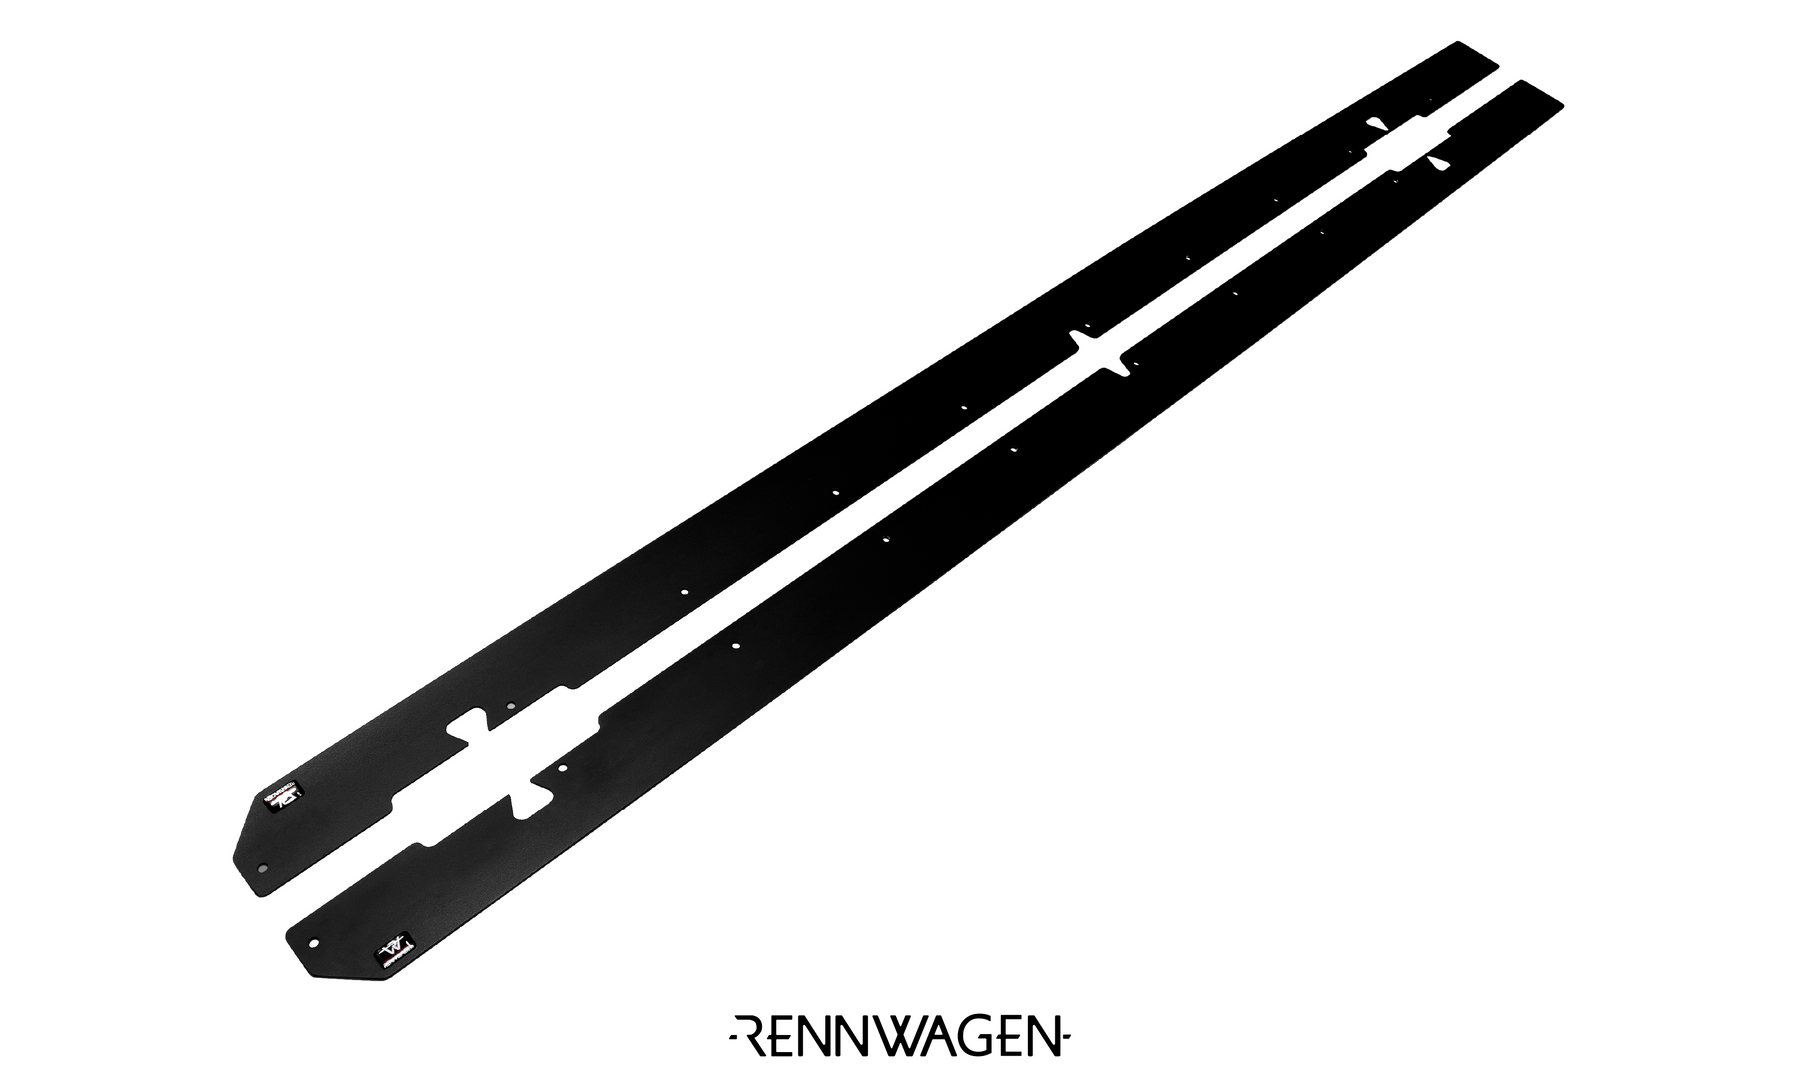 Rennwagen Side Splitters for MK7 and MK7.5 GTI